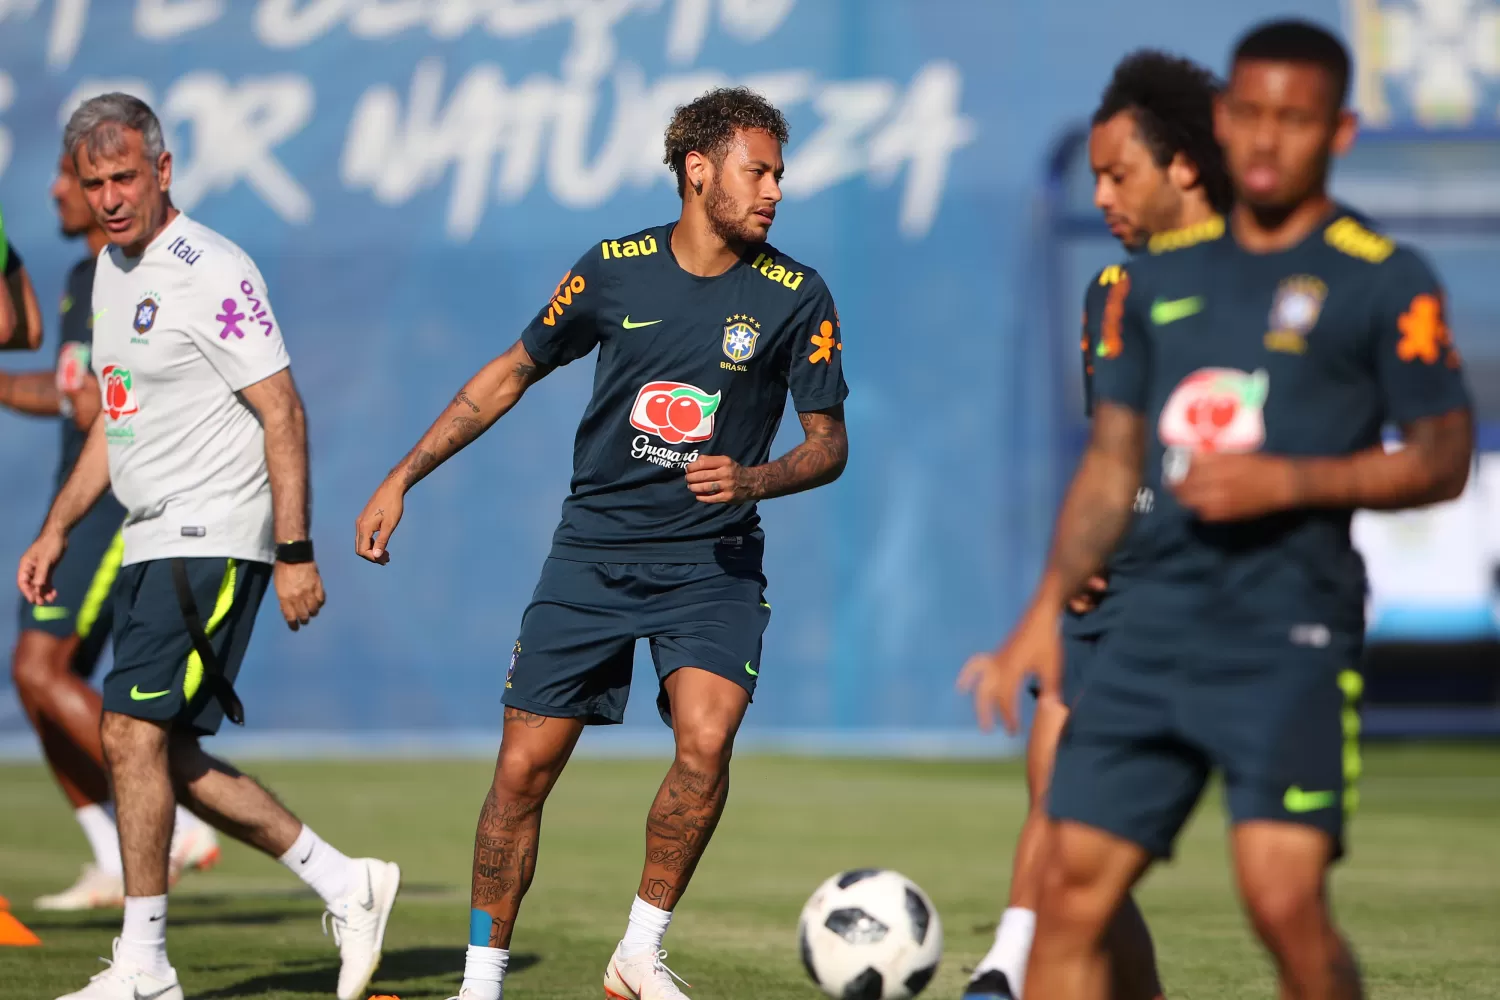 El PSG francés pagó 222 millones de euros por el pase de Neymar.
REUTERS